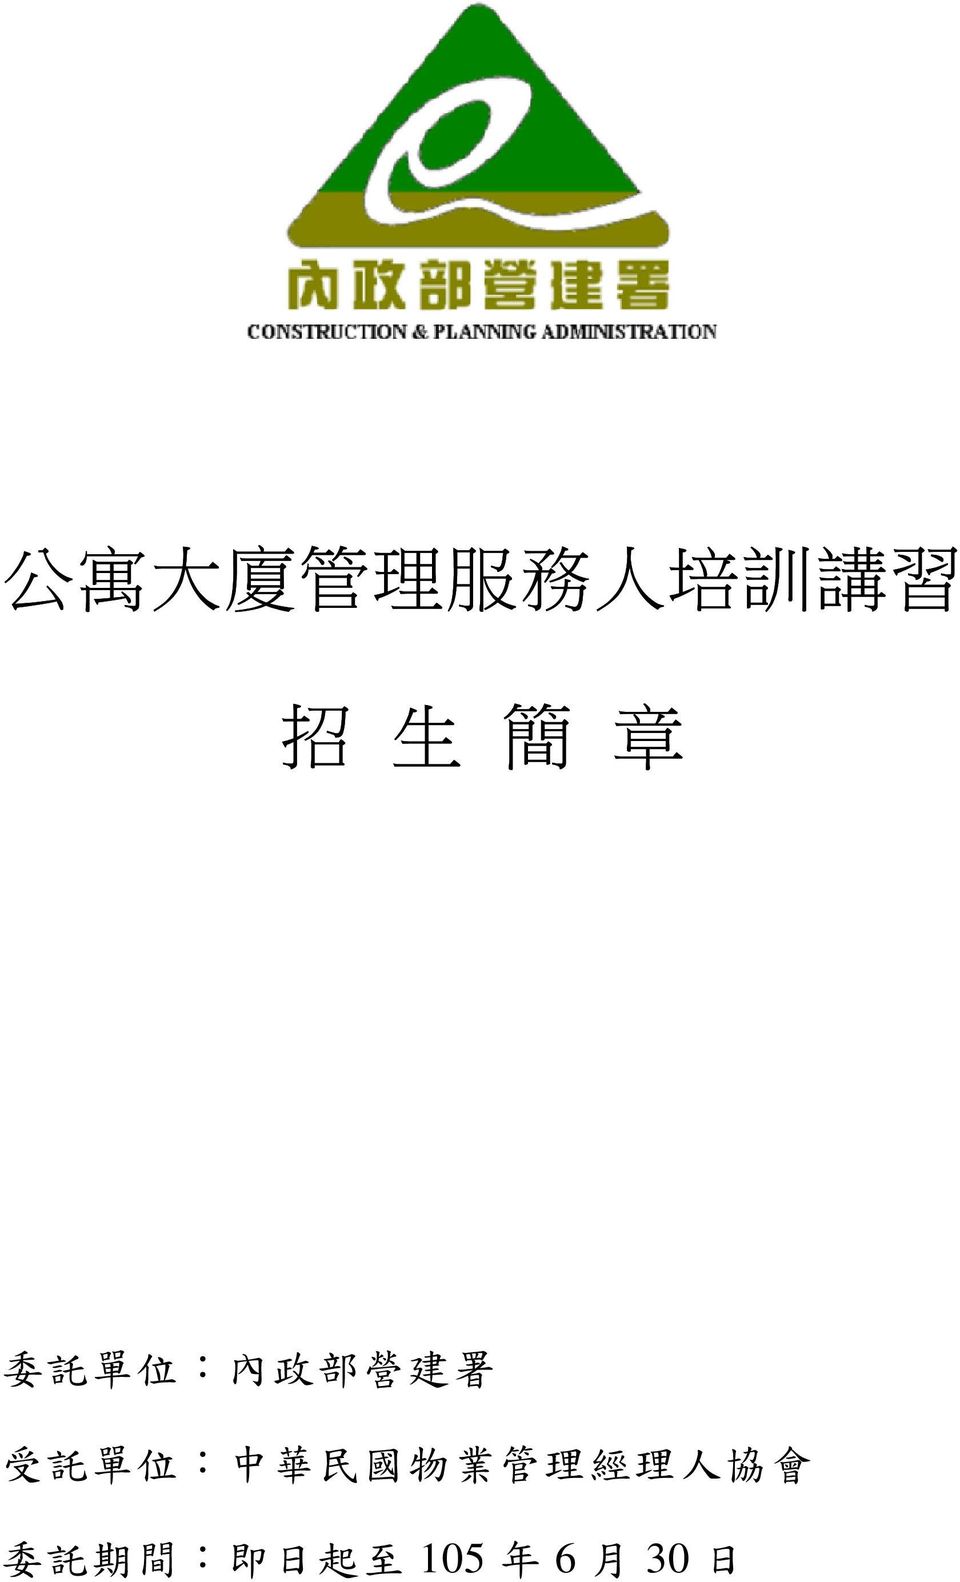 單 位 : 中 華 民 國 物 業 管 理 經 理 人 協